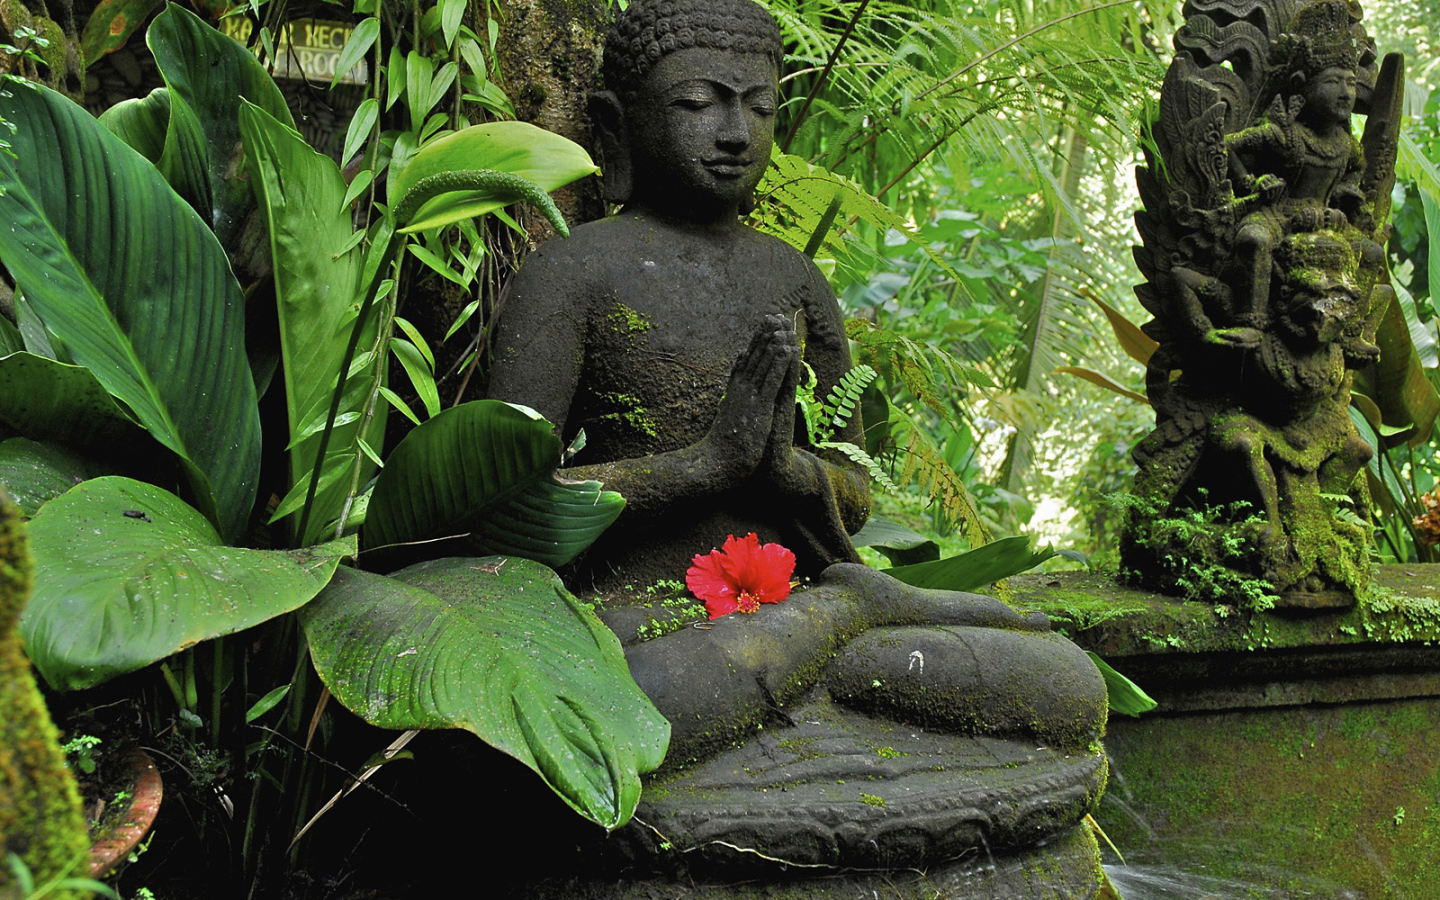 Будда в джунглях на Бали